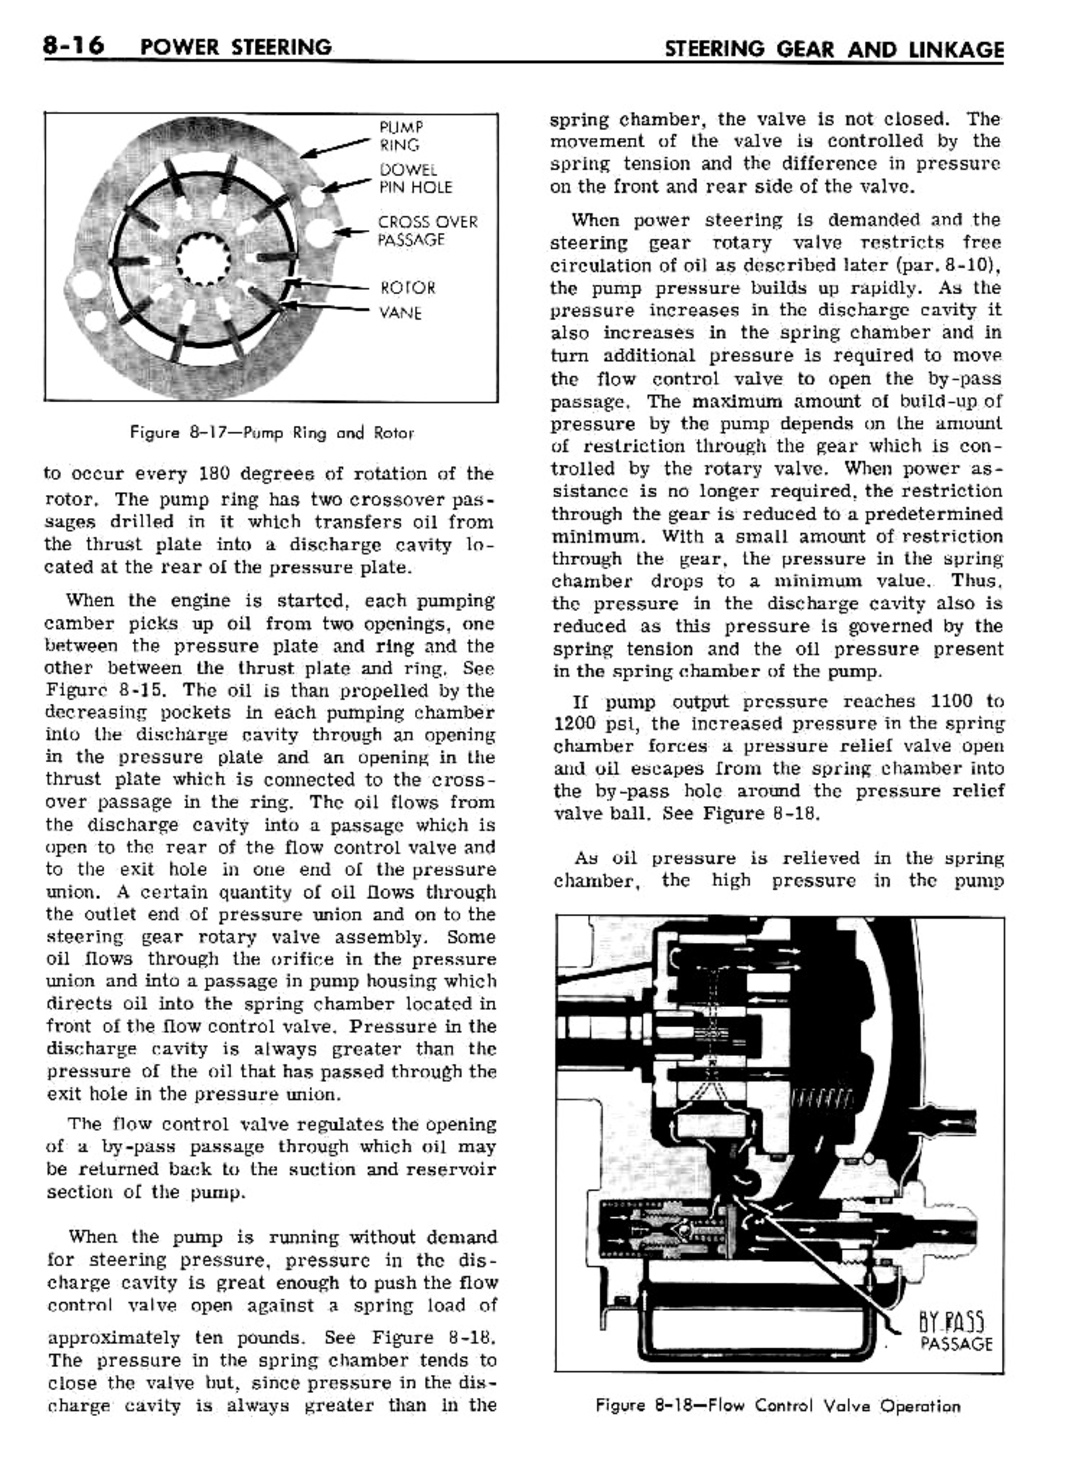 n_08 1961 Buick Shop Manual - Steering-016-016.jpg